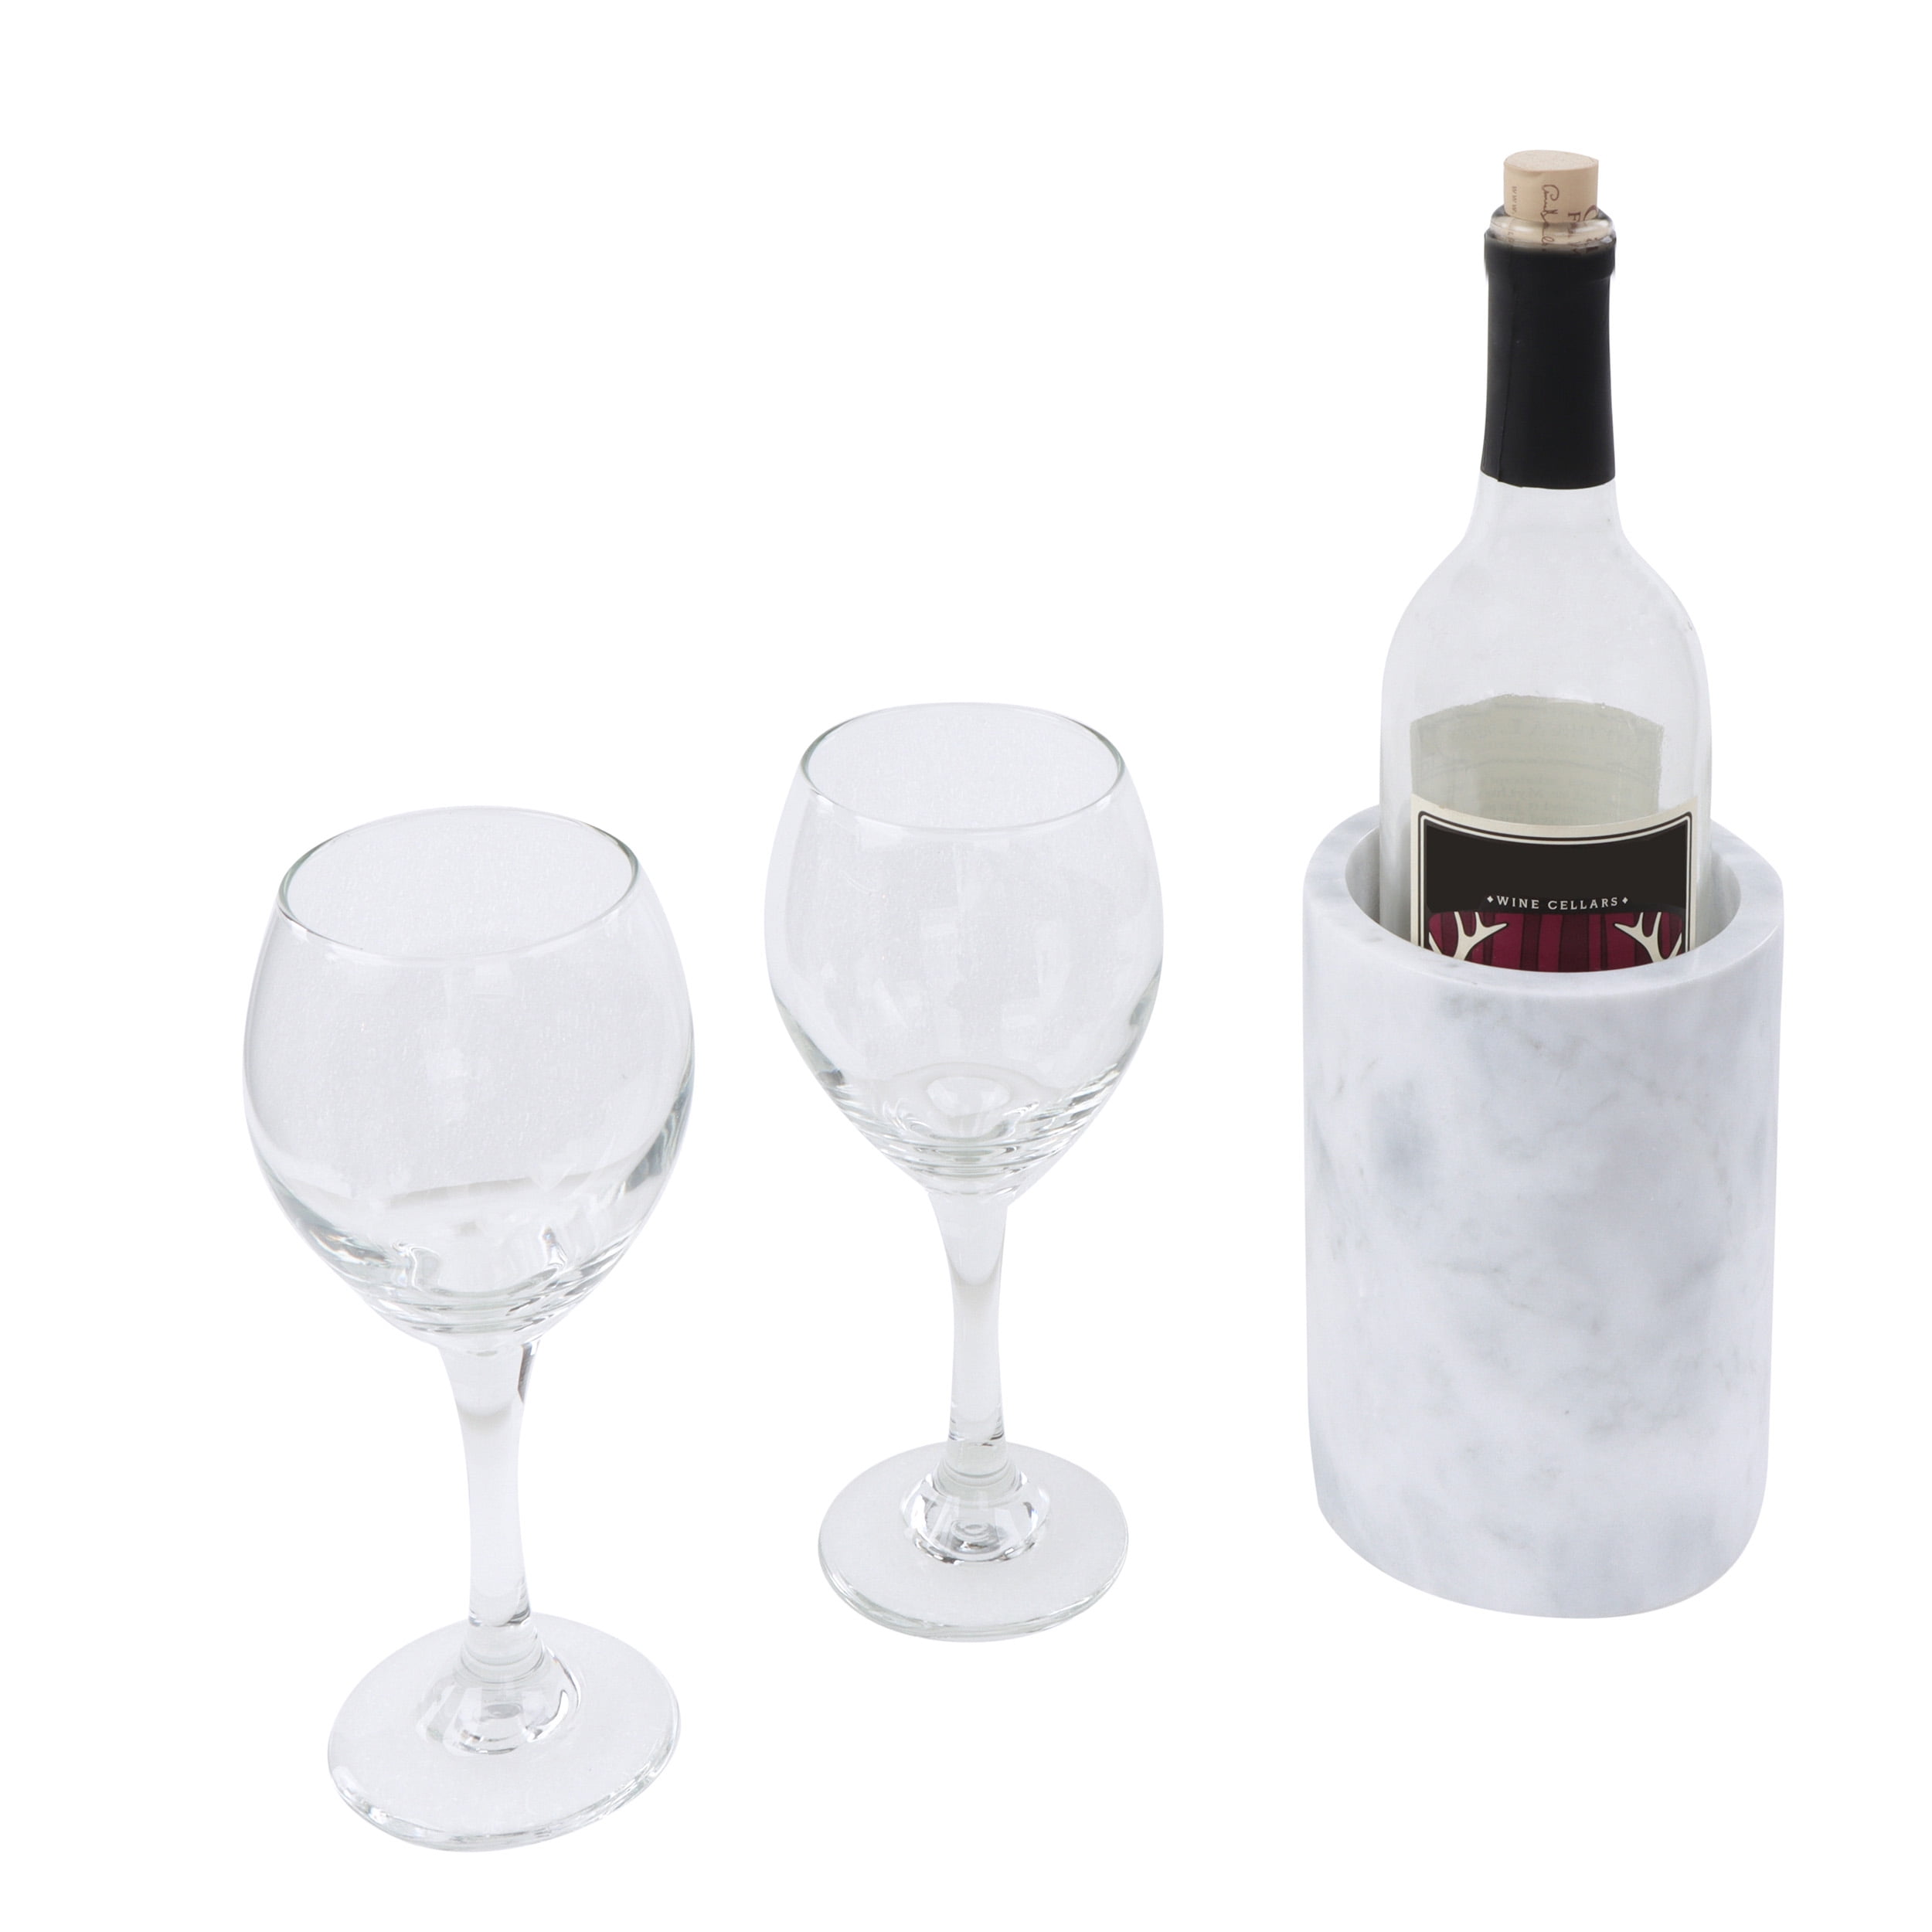 GAURI KOHLI Brno 1-Bottle White Marble Wine Chiller GK51097 - The Home Depot